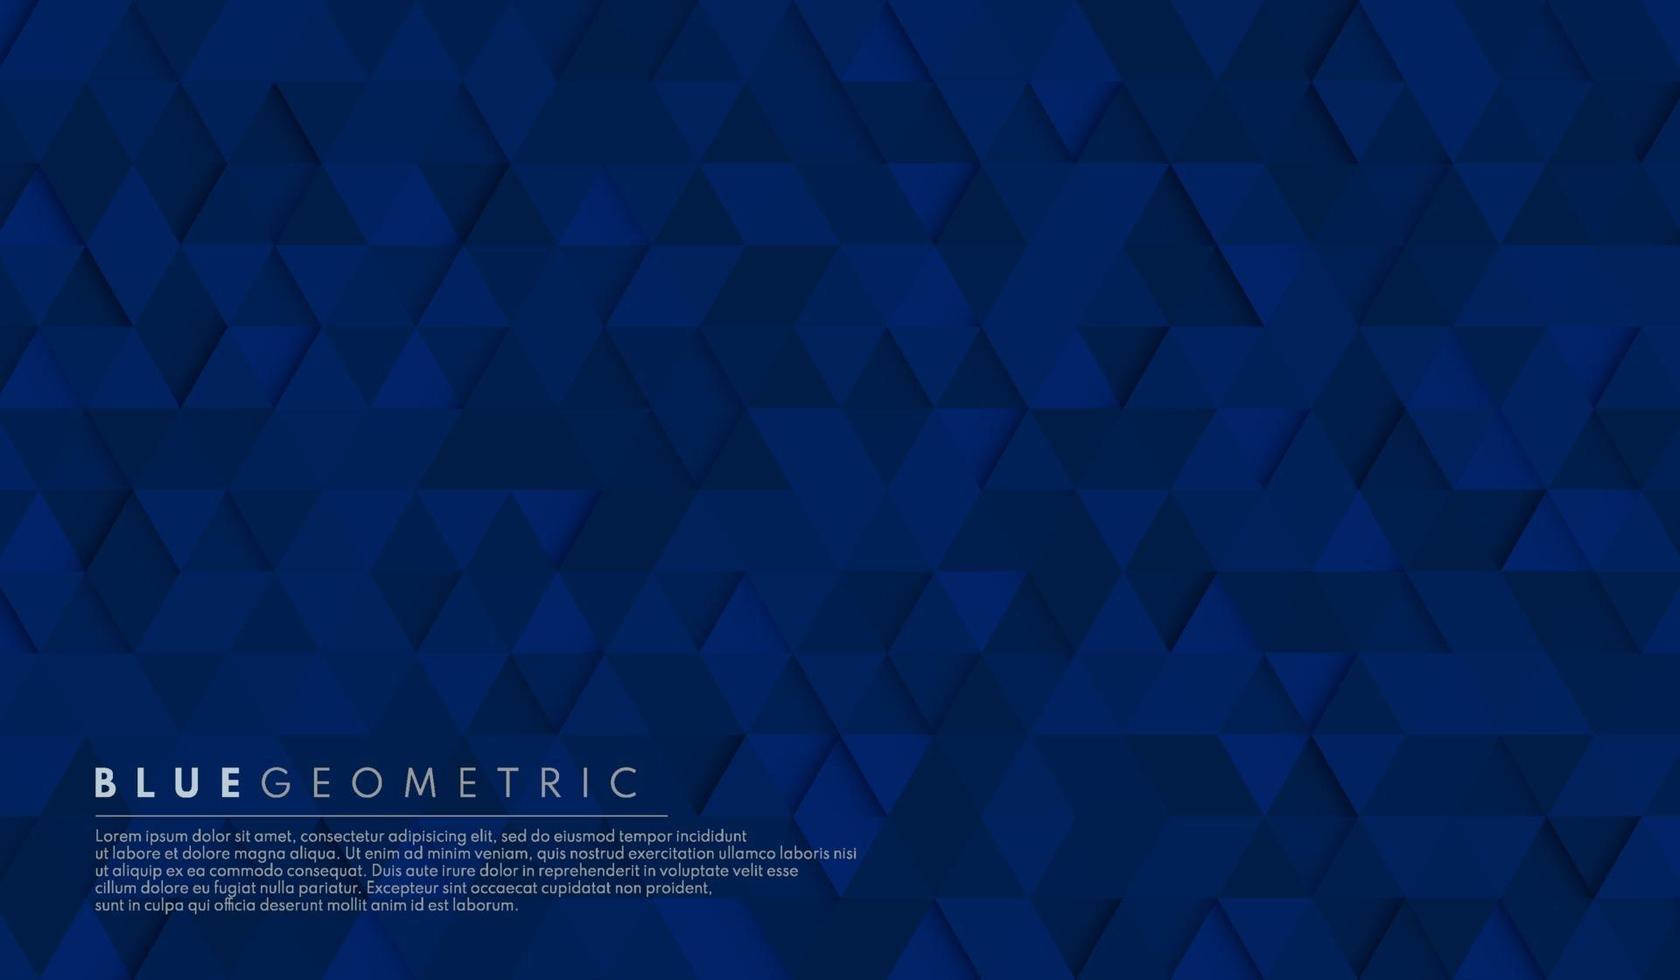 Patrón de fondo de forma hexagonal geométrica azul marino oscuro abstracto. vector para el diseño de presentaciones. traje para negocios, corporativos, instituciones, fiestas, festivos, seminarios y charlas. ilustración vectorial